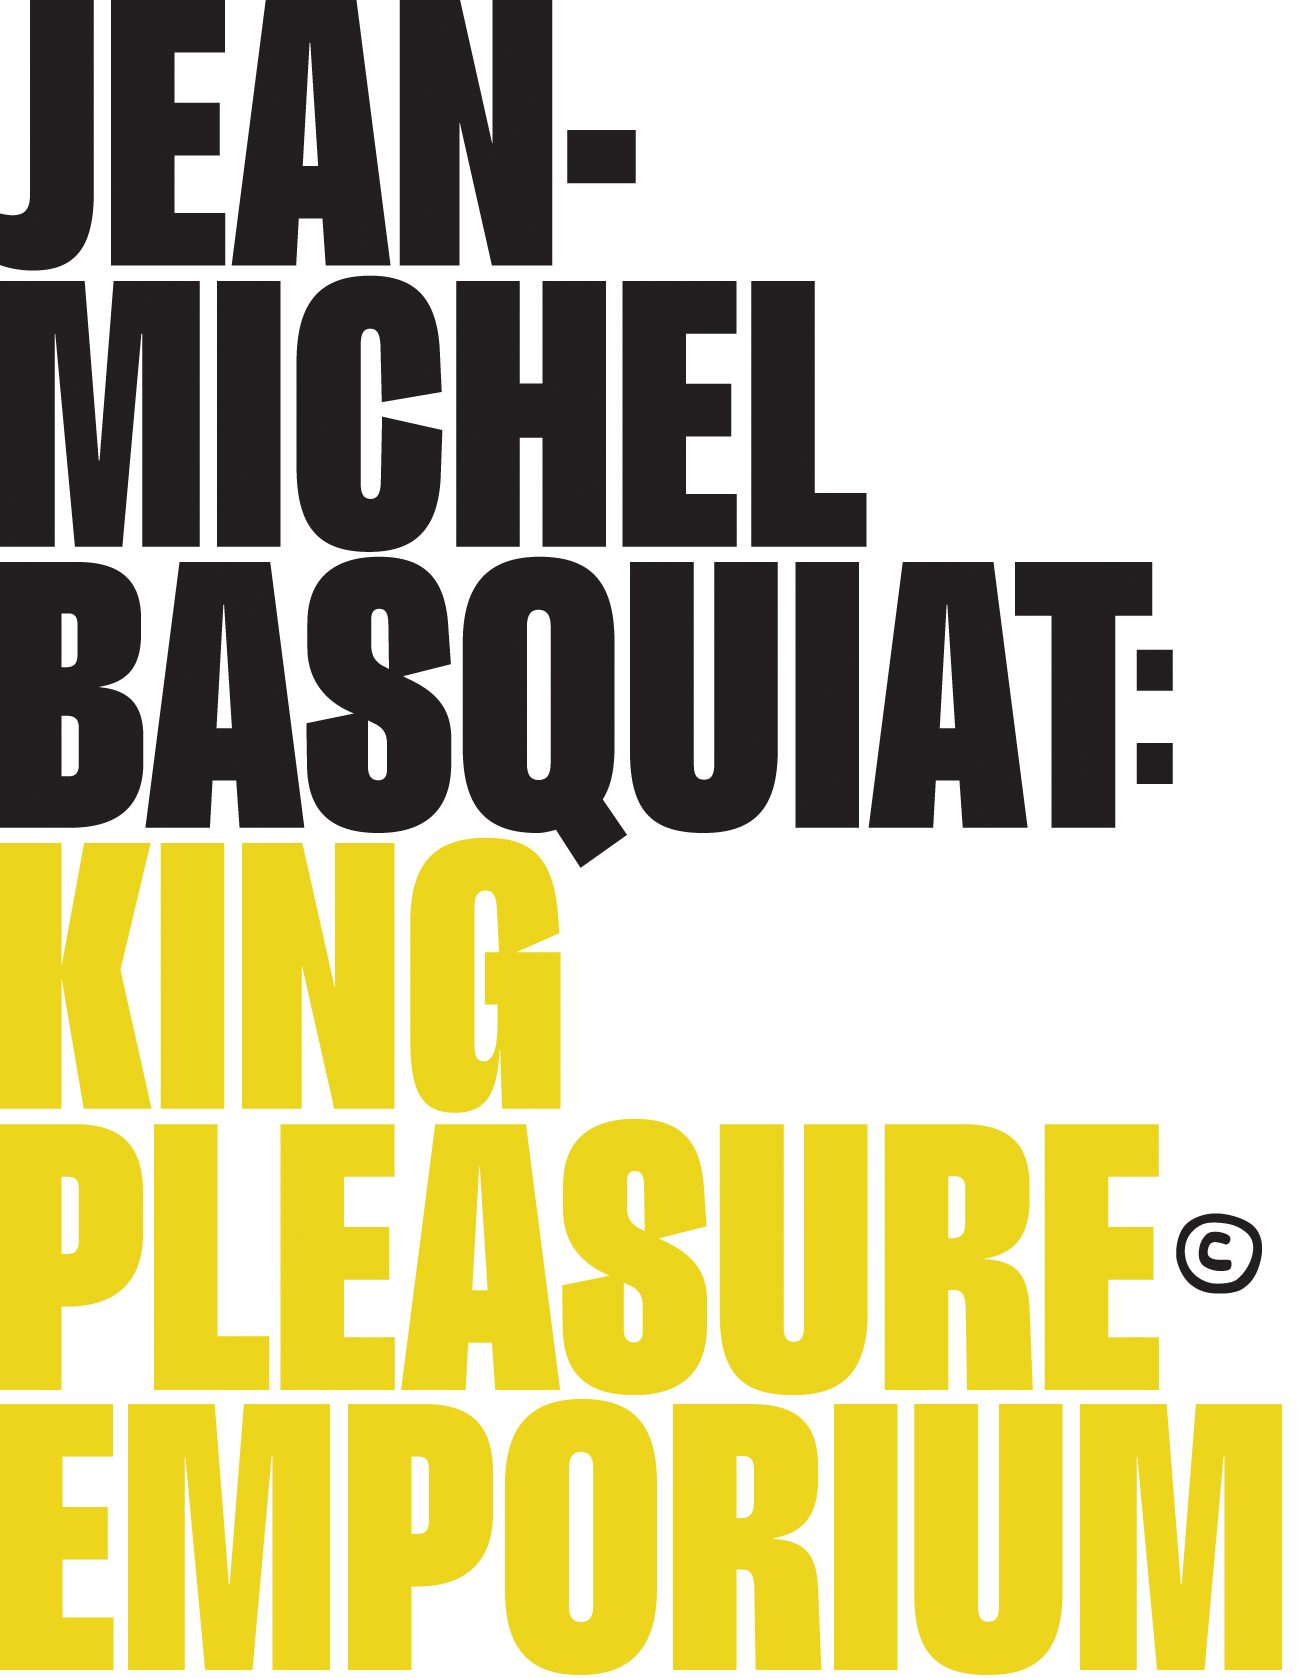 King Pleasure Emporium